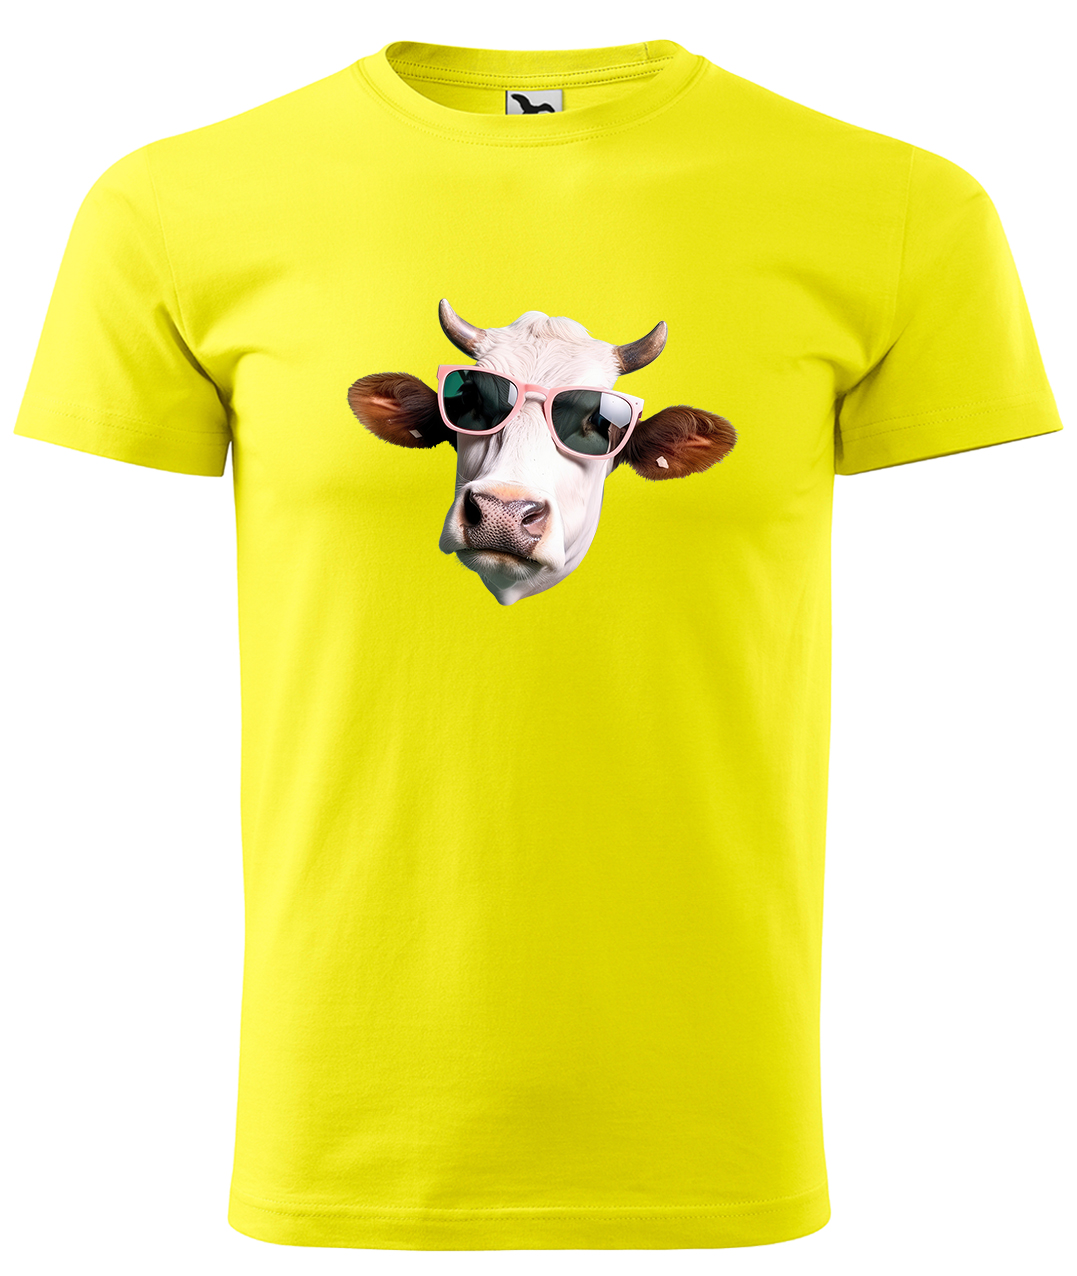 Dětské tričko s krávou - Kráva v brýlích Velikost: 4 roky / 110 cm, Barva: Žlutá (04), Délka rukávu: Krátký rukáv